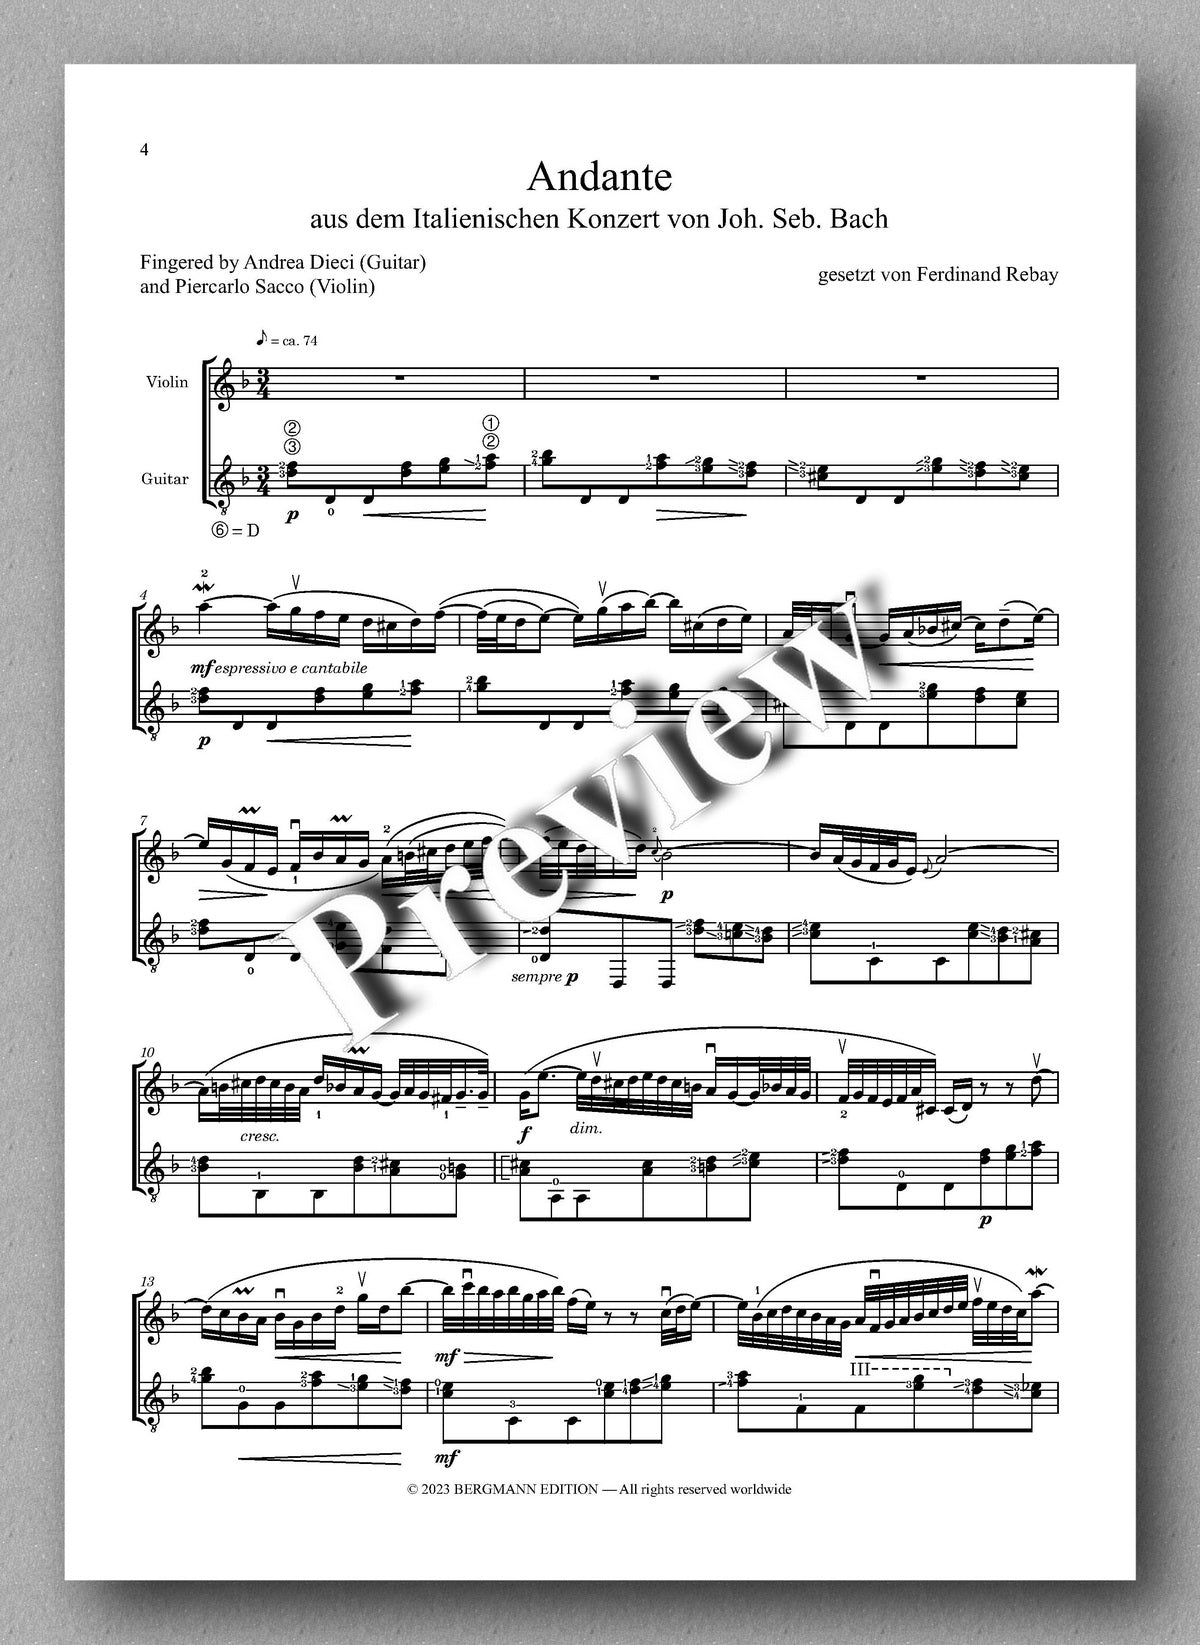 Ferdinand Rebay, Andante aus dem Italienischen Konzert von J.S. Bach - preview of the music score 1